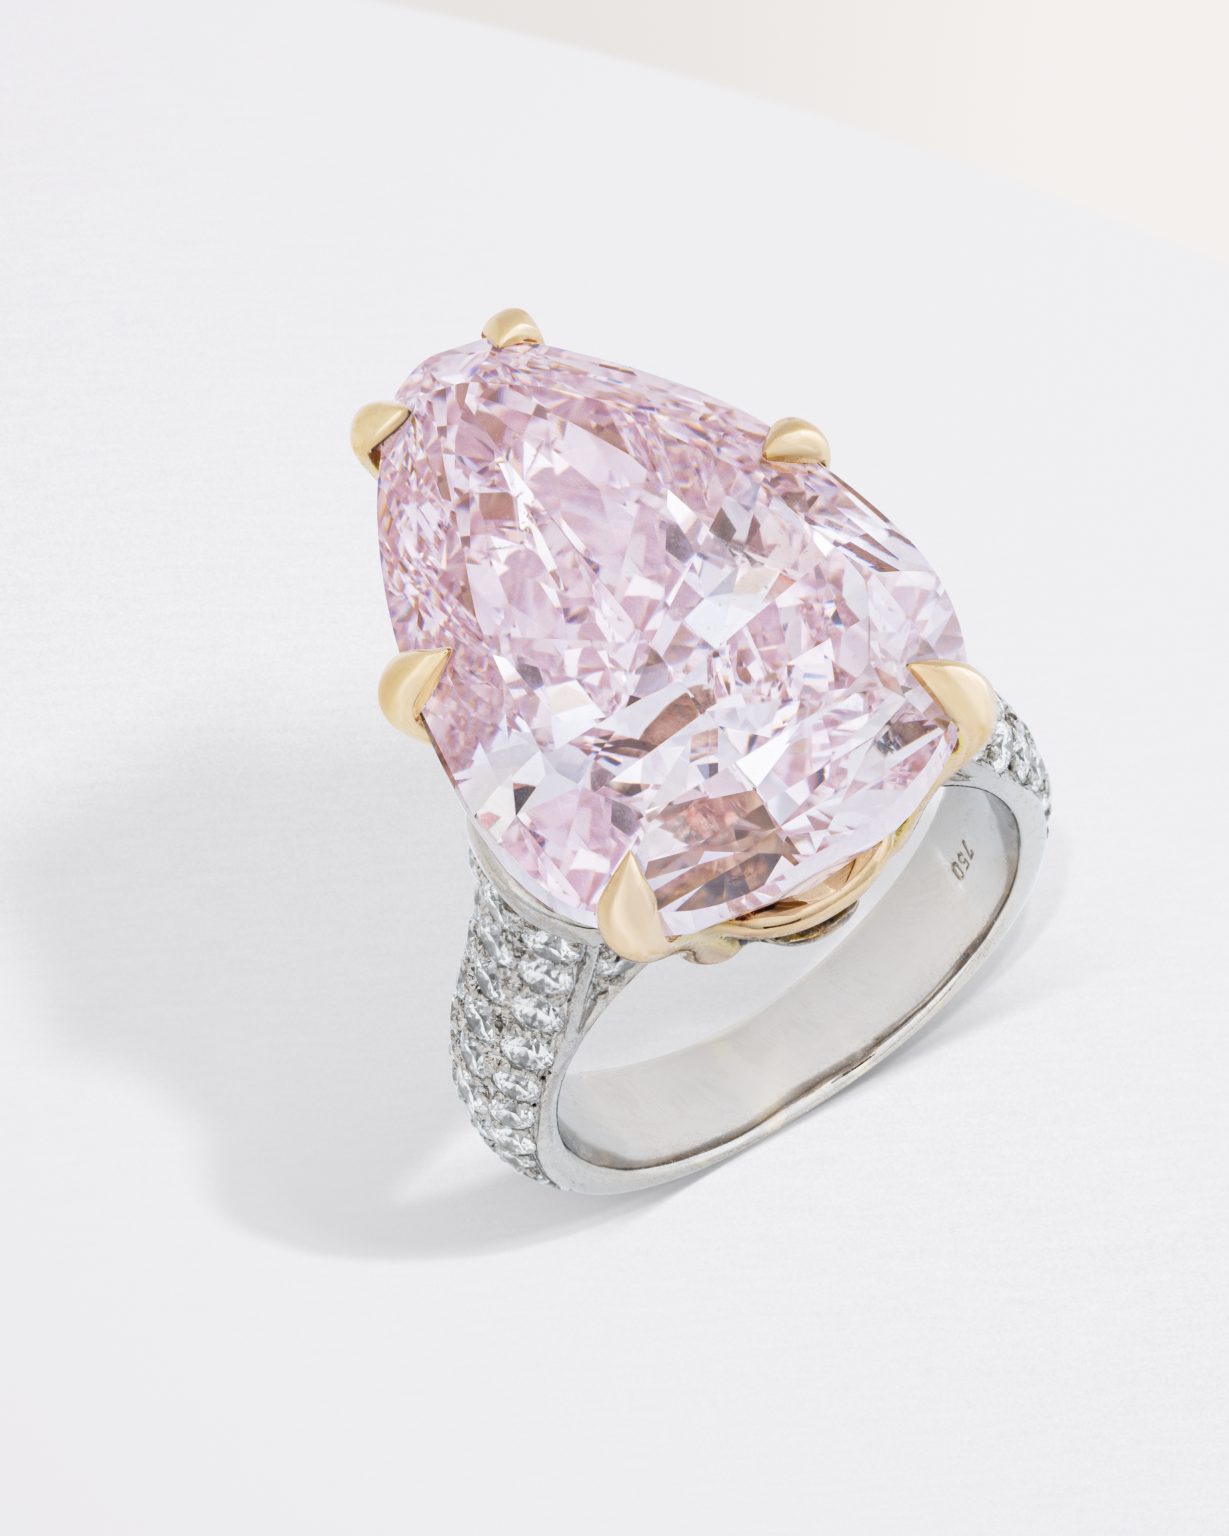 Δακτυλίδι από Bulgari με ένα μεγάλο ροζ διαμάντι 20,06 καρατίων, που πλαισιώνεται από μικρότερα